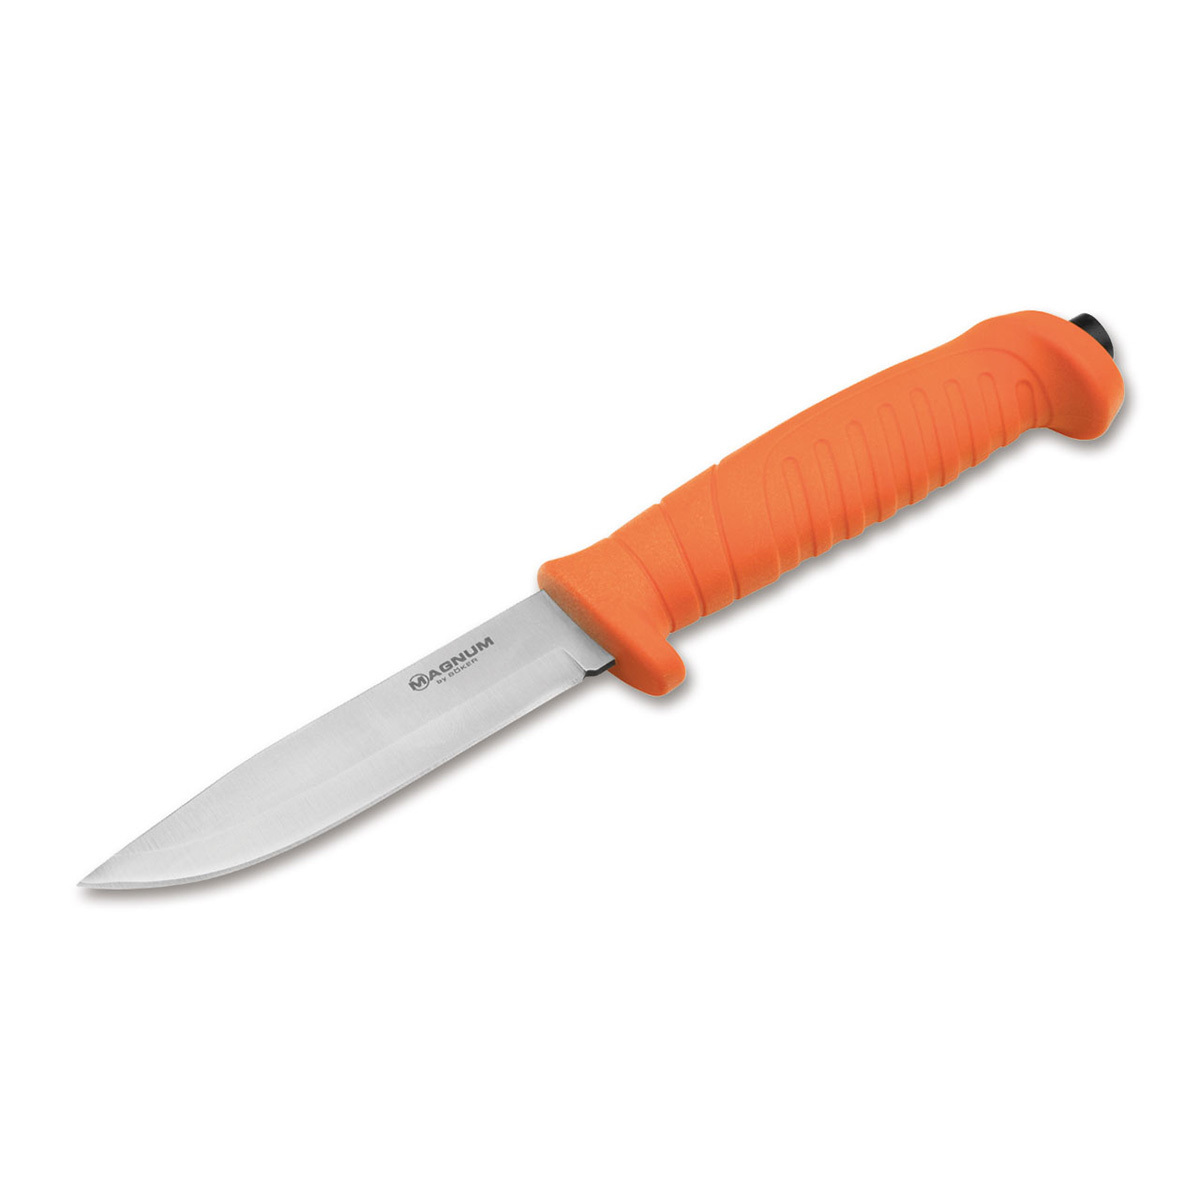 Нож с фиксированным клинком Boker Knivgar Sar Orange, сталь 420A, рукоять пластик